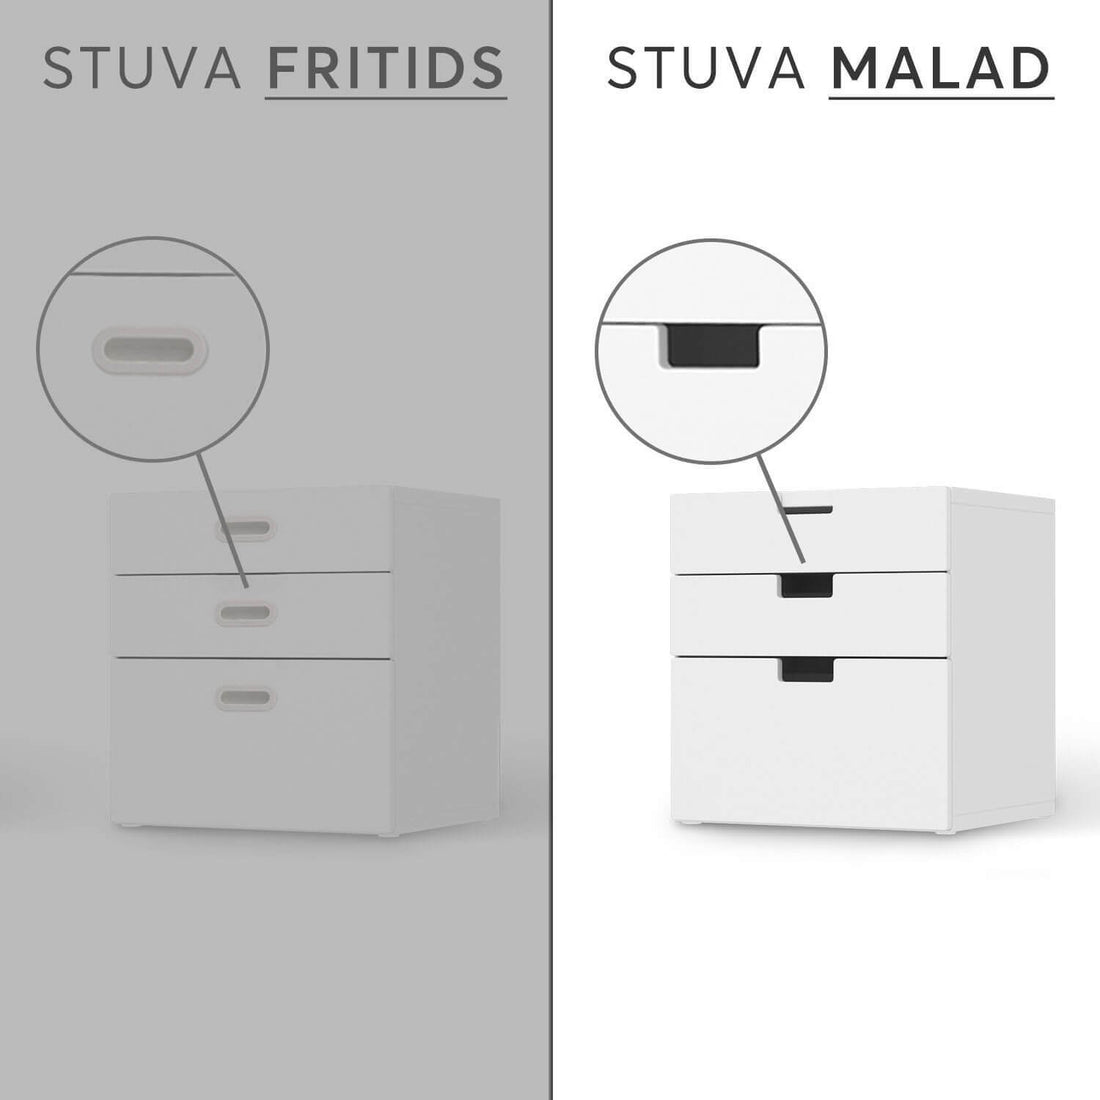 Folie für Möbel IKEA Stuva / Malad Kommode - 3 Schubladen - Design: Fussballstar